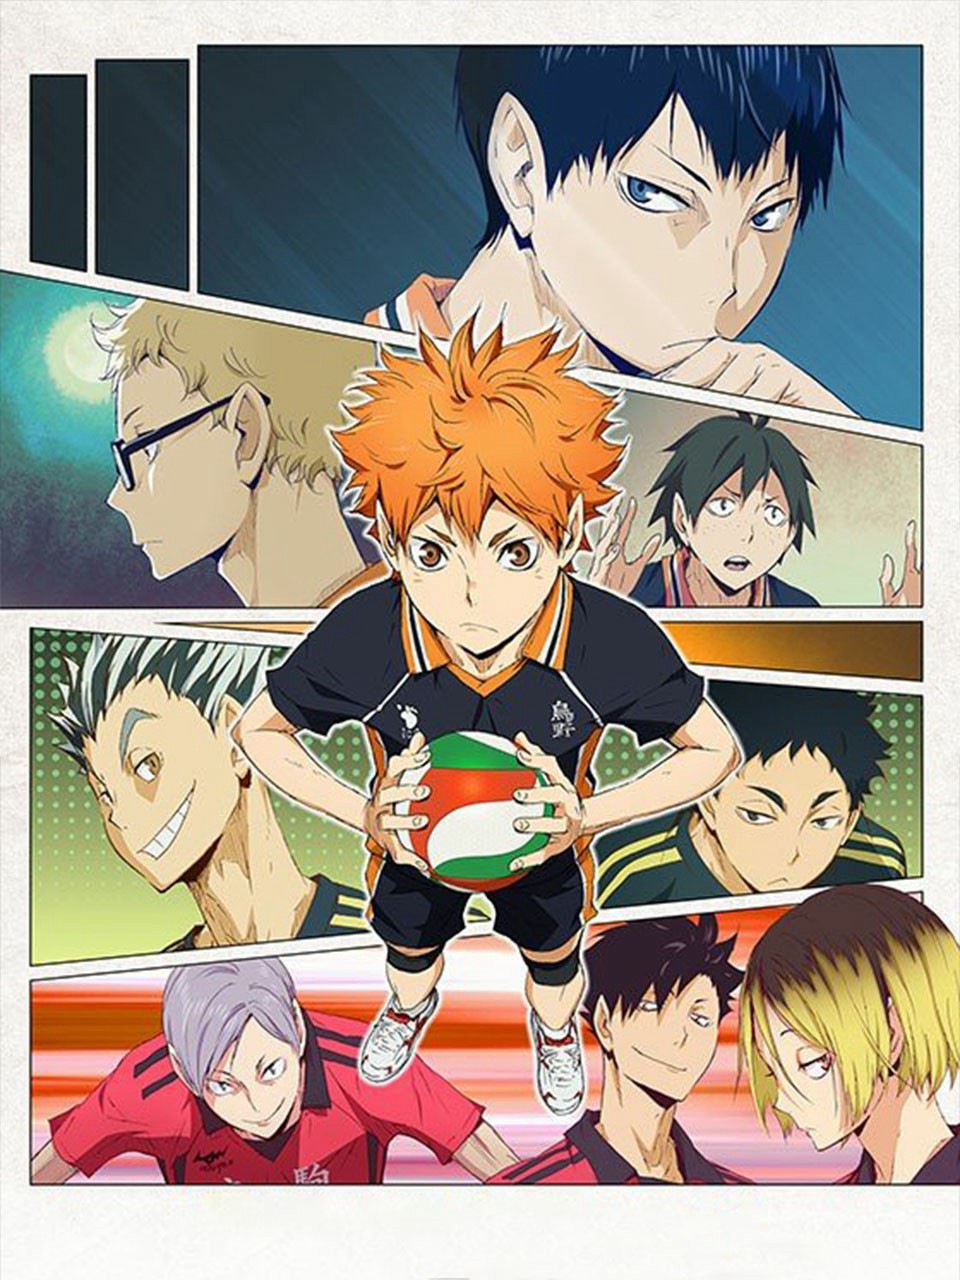 Thiếu niên bóng chuyền! Phần 2 - Haikyu!! 2nd Season (2015)